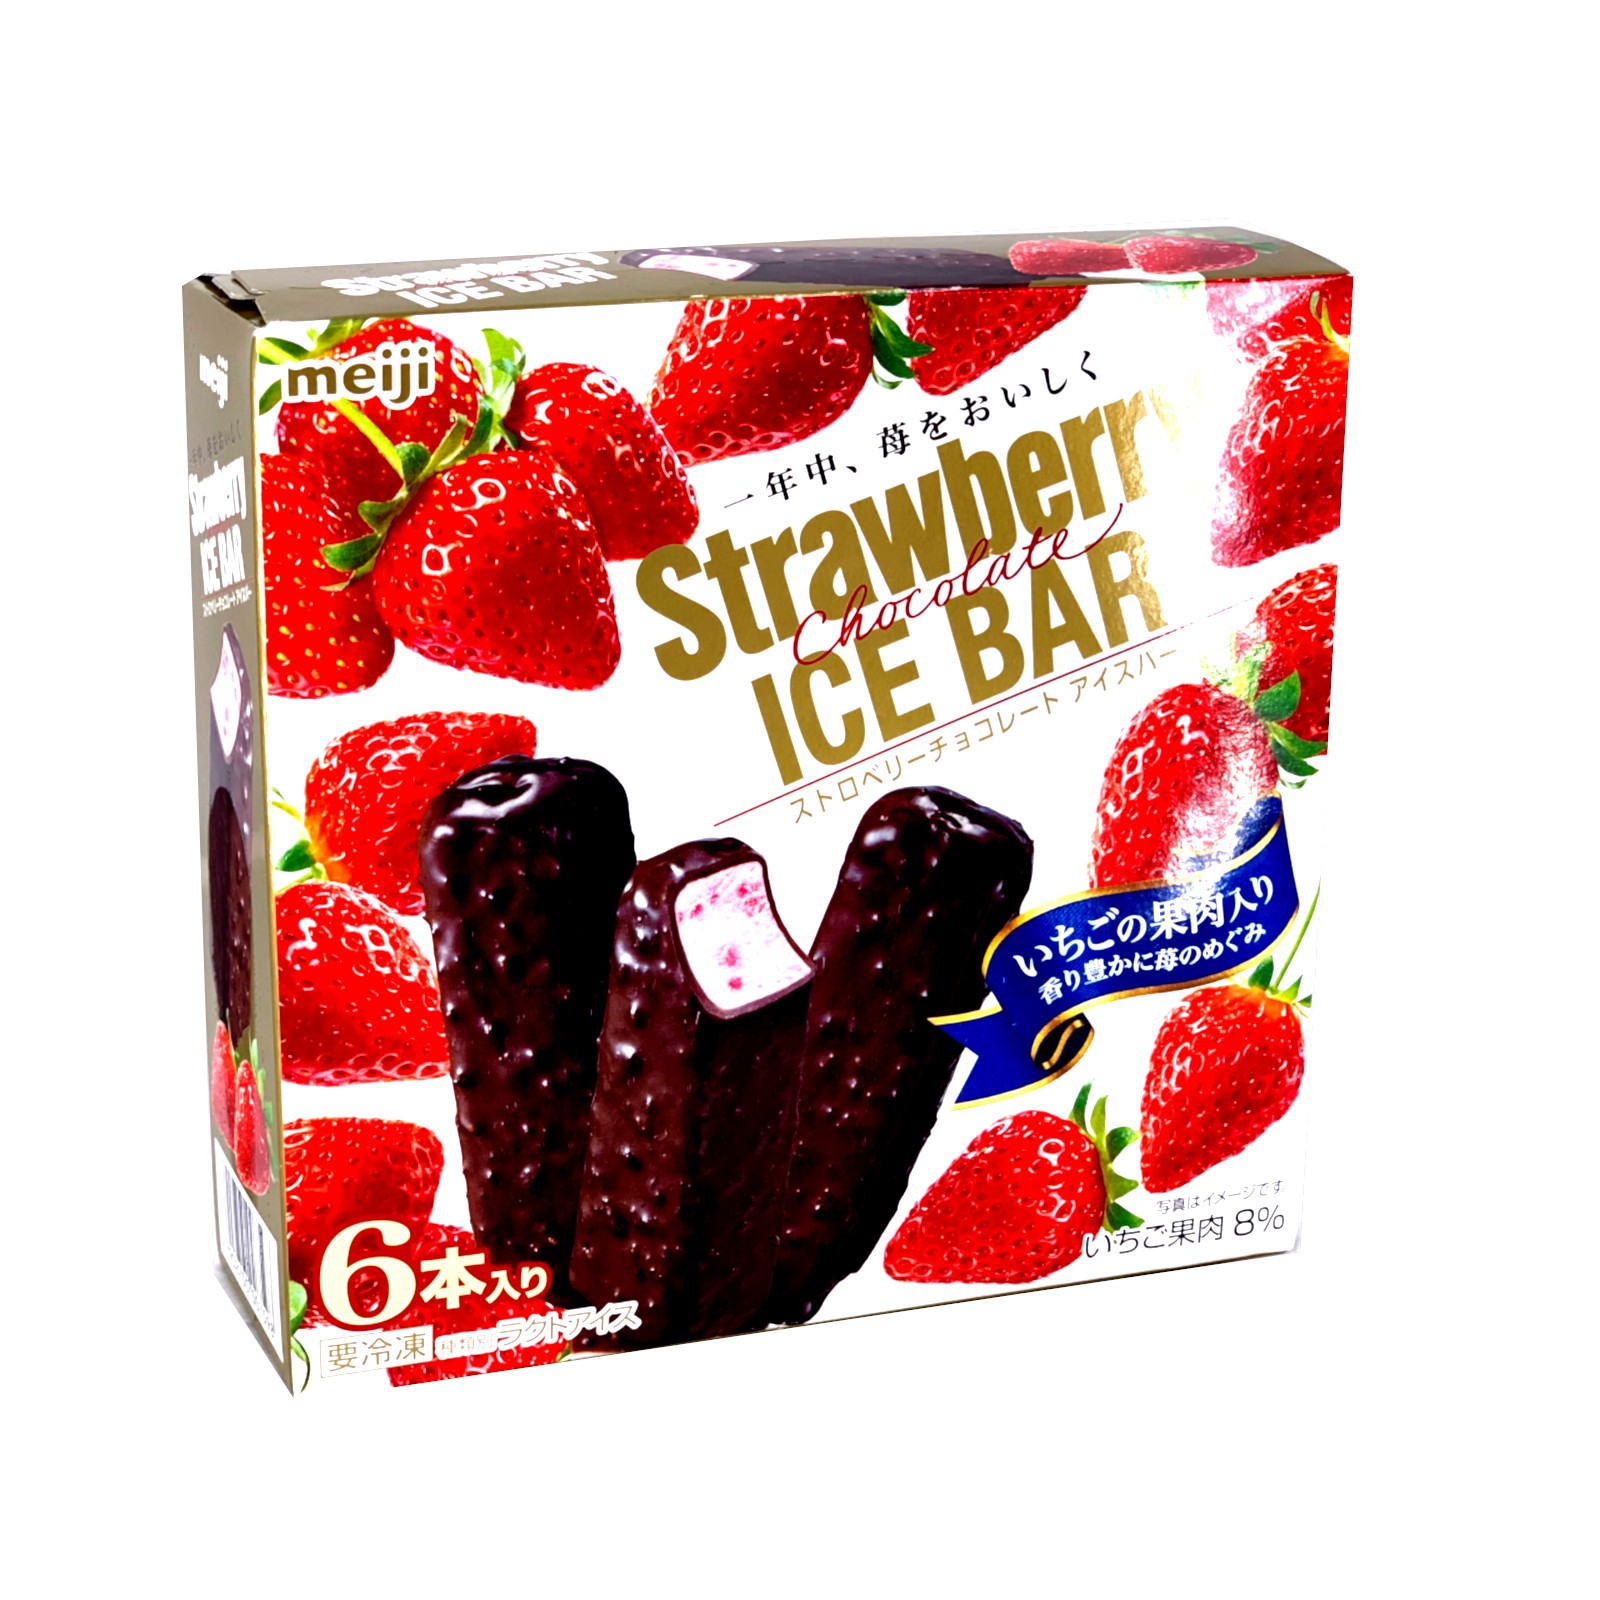 meiji-strawberry-chocolate-ice-bar